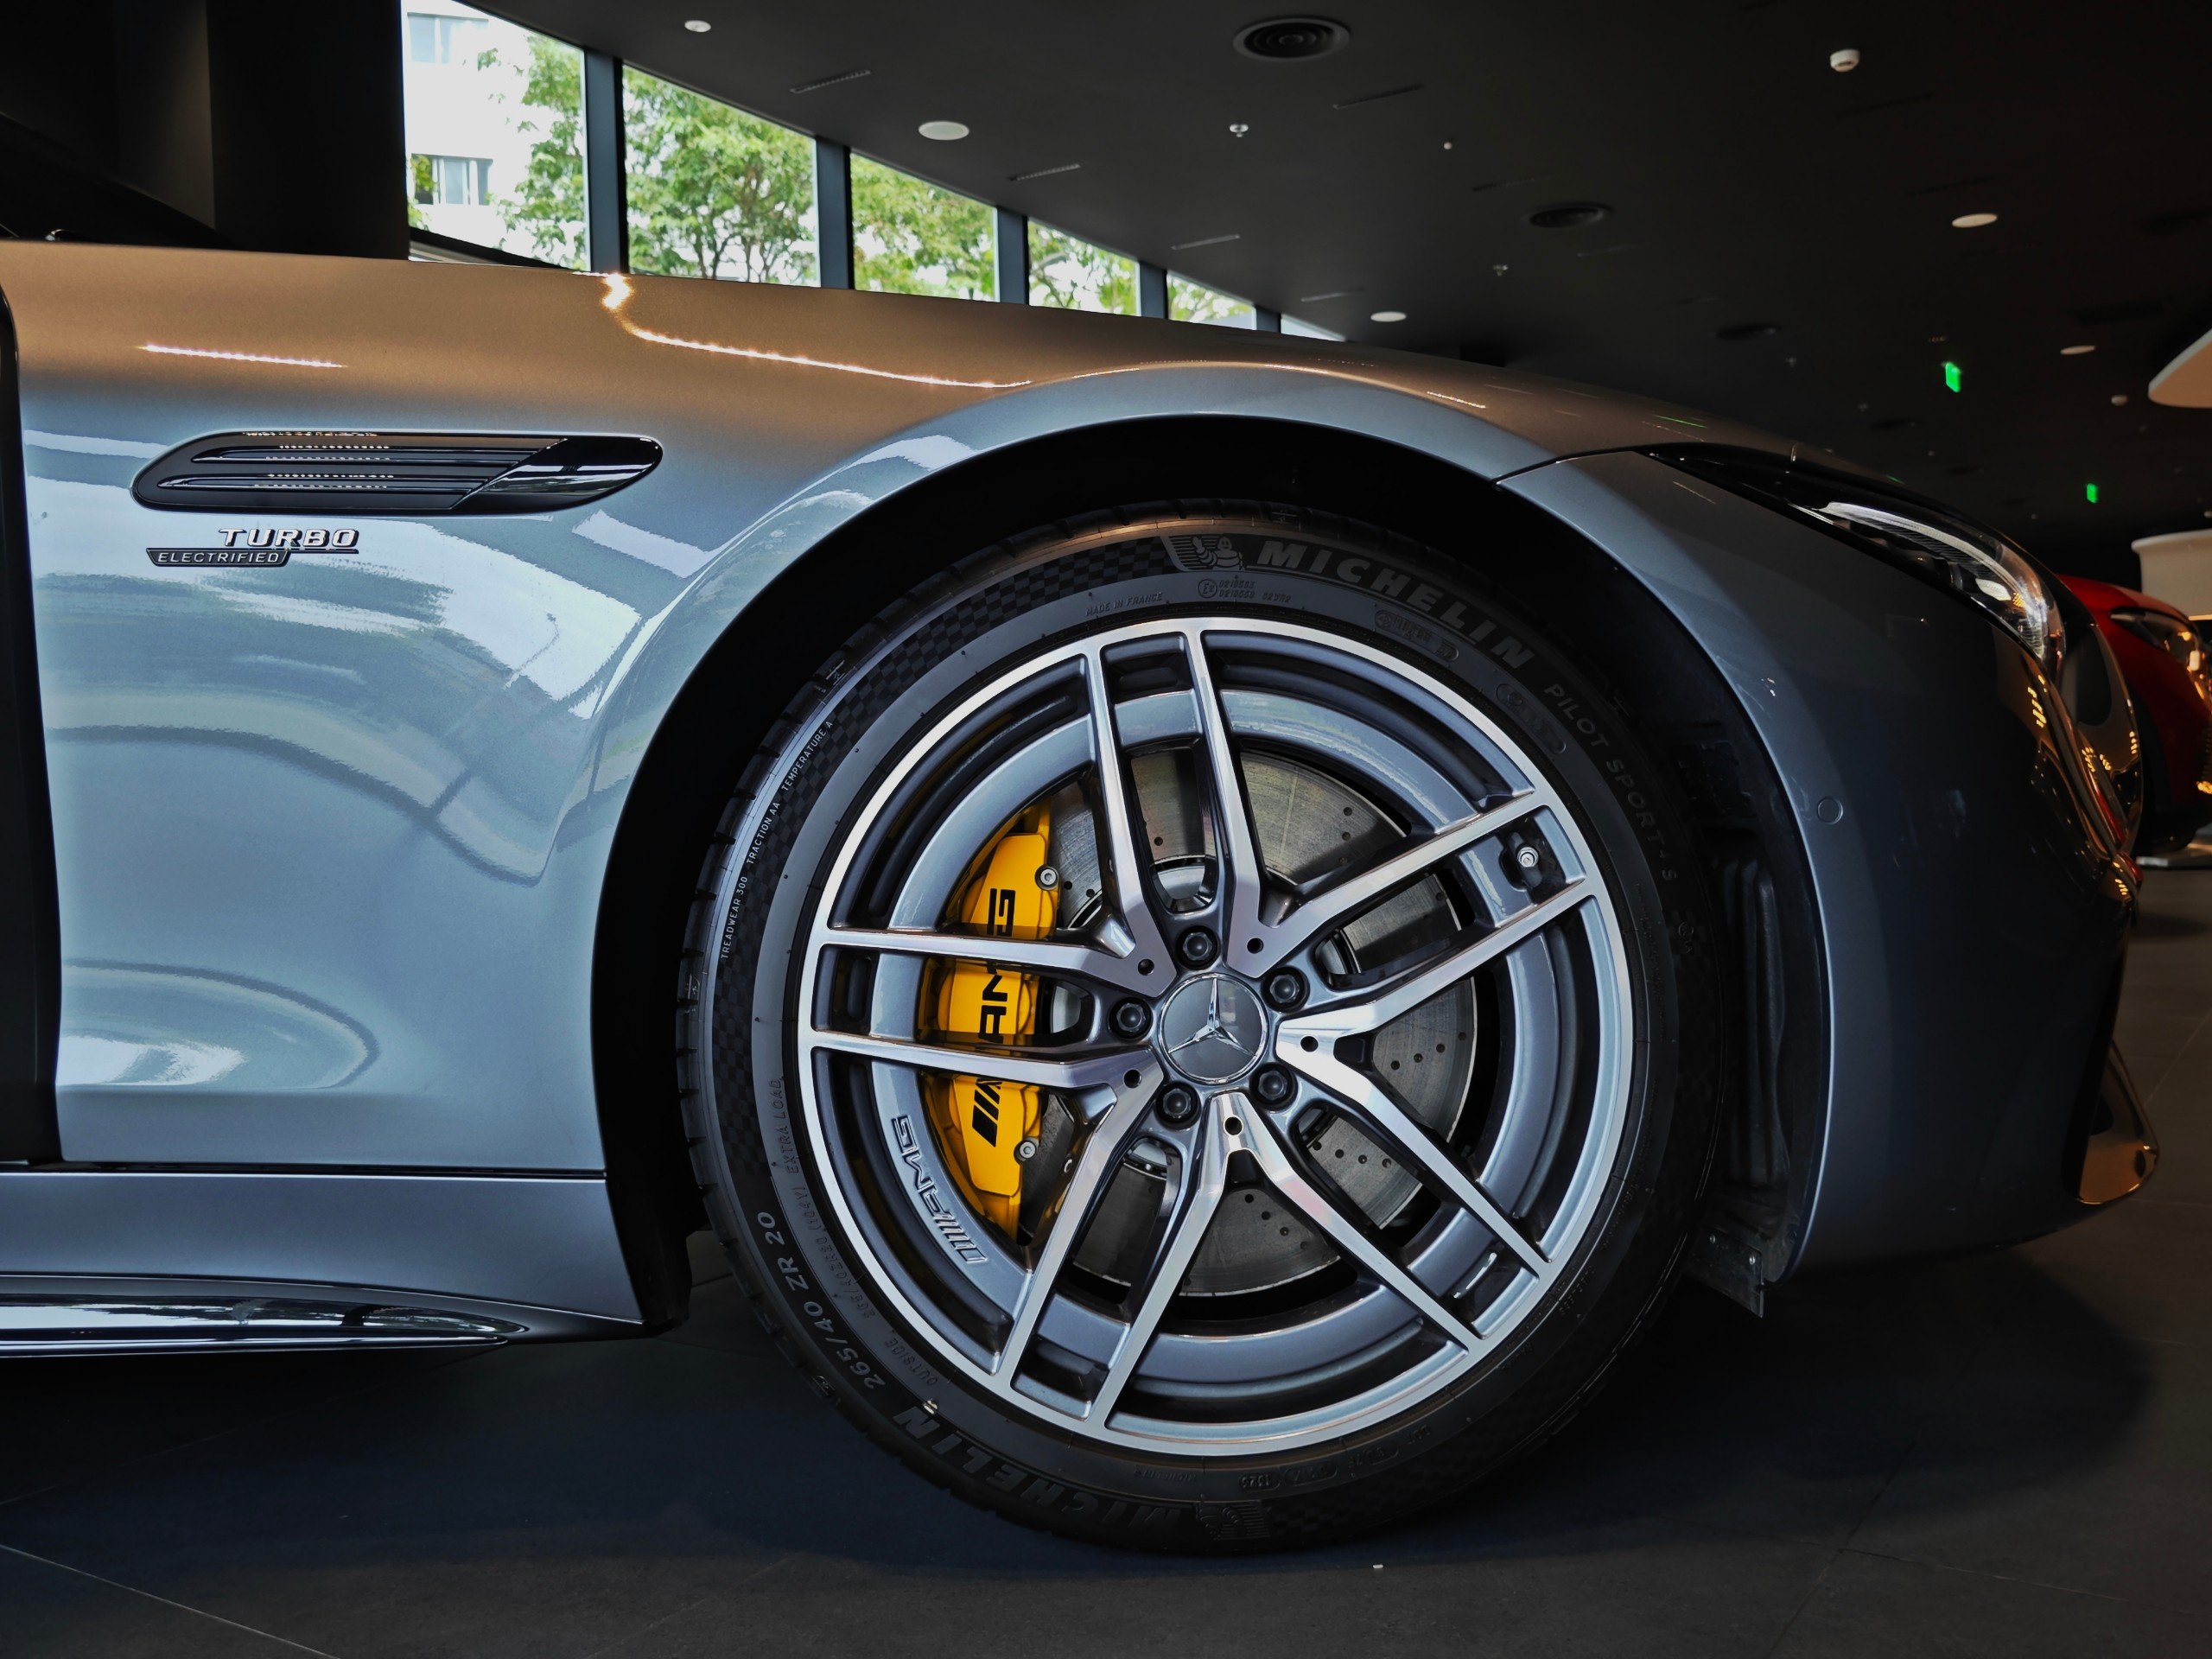 Chi tiết Mercedes-AMG SL 43 giá gần 7 tỷ đồng tại đại lý: Gói ngoại thất thể thao, nhiều công nghệ hiện đại đấu Porsche 911- Ảnh 5.